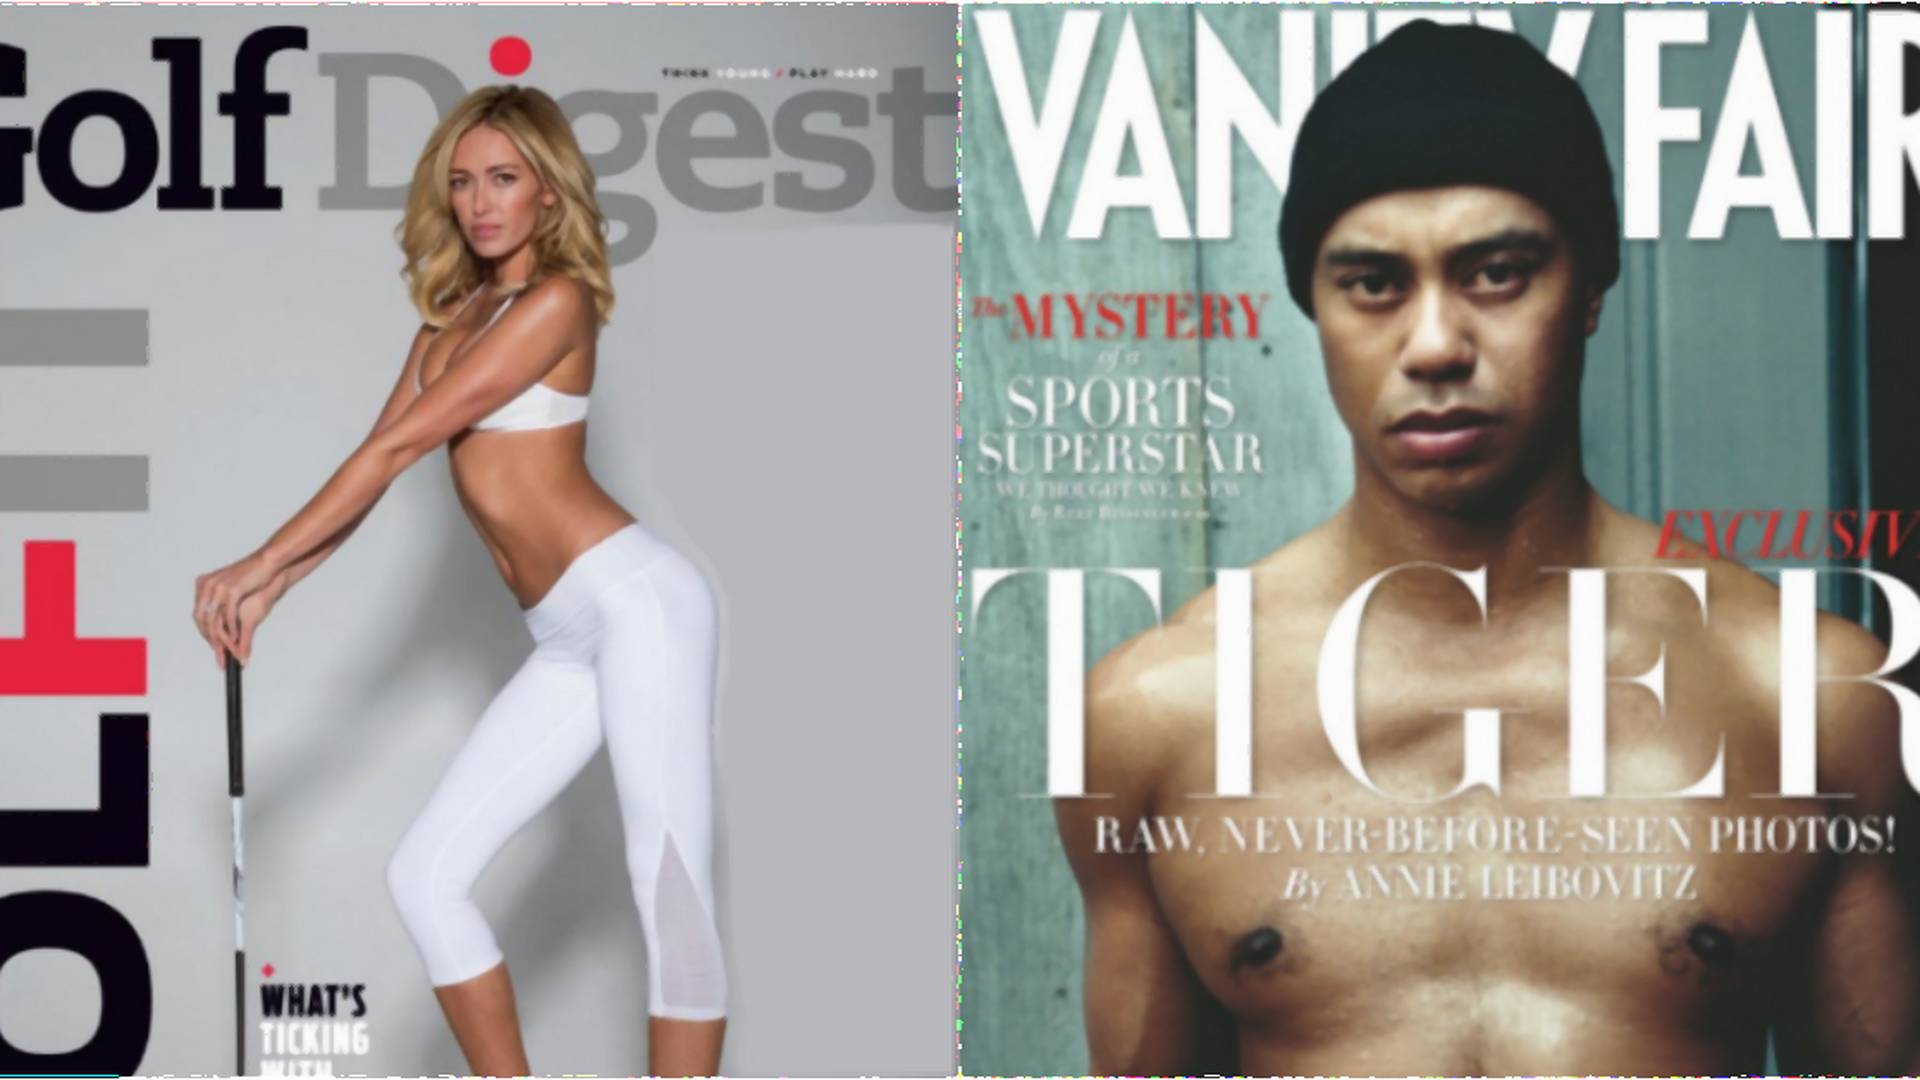 Športovci vedia zaujať aj inak ako výkonom: 17 obálok časopisov, ktoré menili históriu